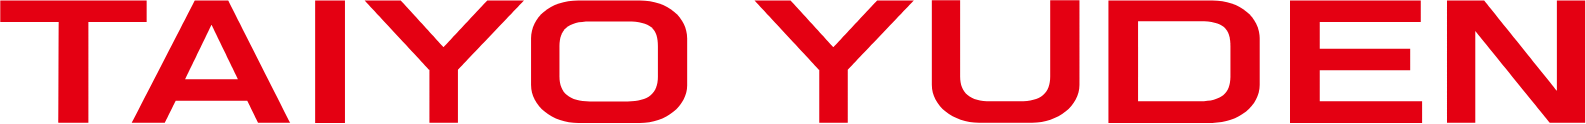 Taiyo Yuden logo large (transparent PNG)